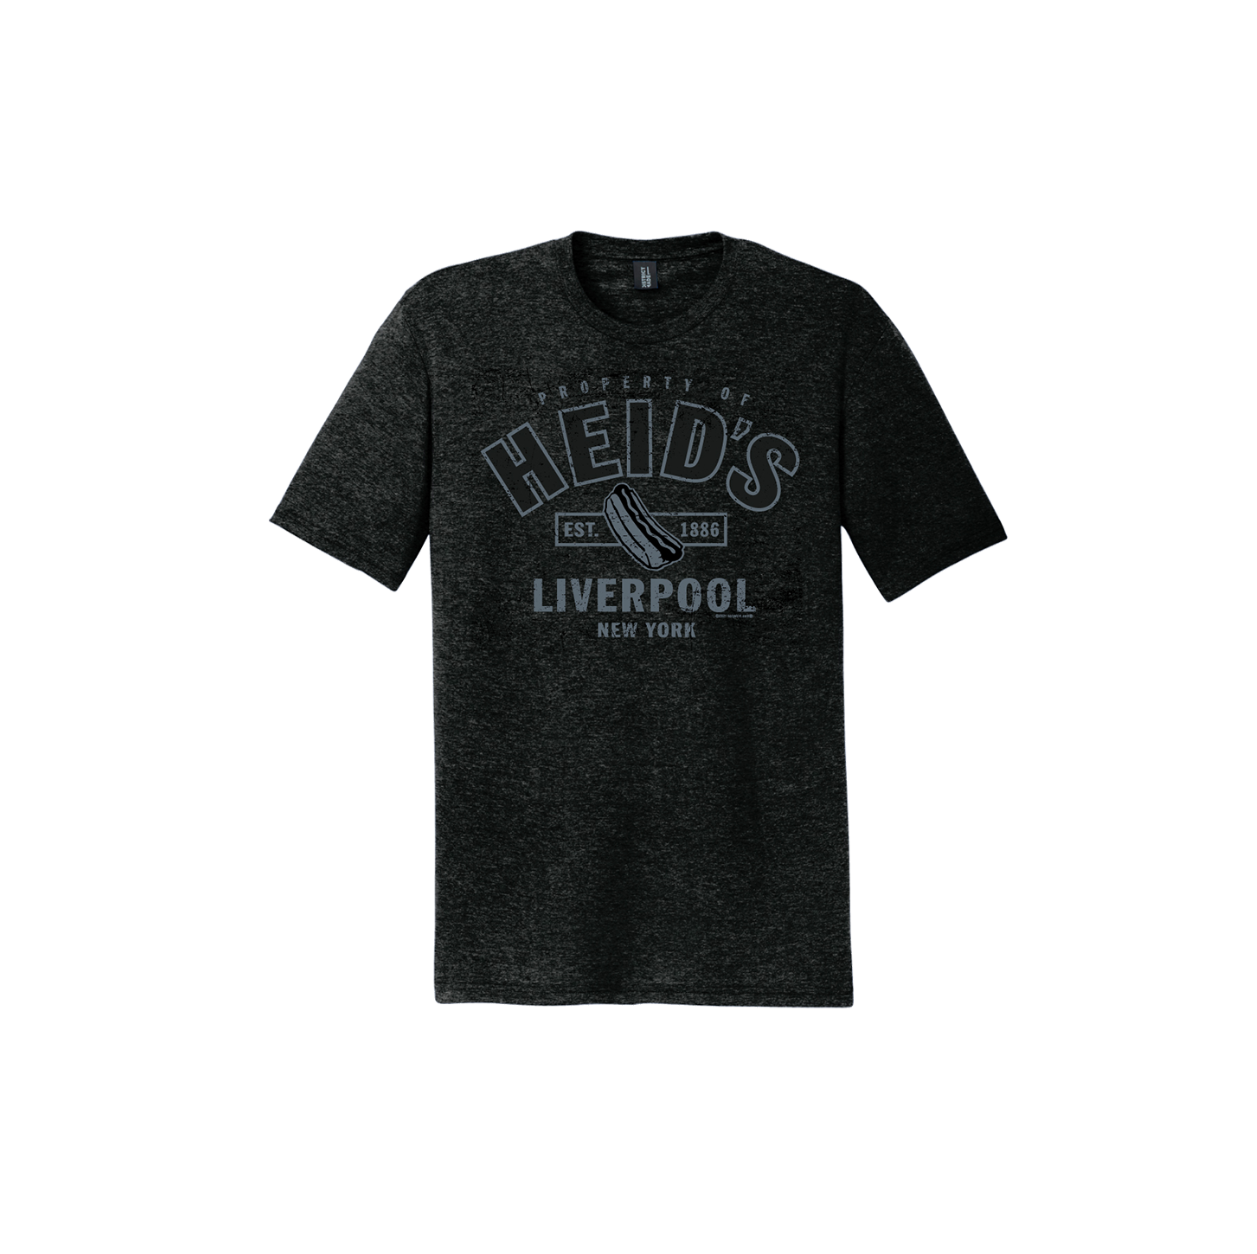 Property Heid's T-Shirt – Heid's of Liverpool